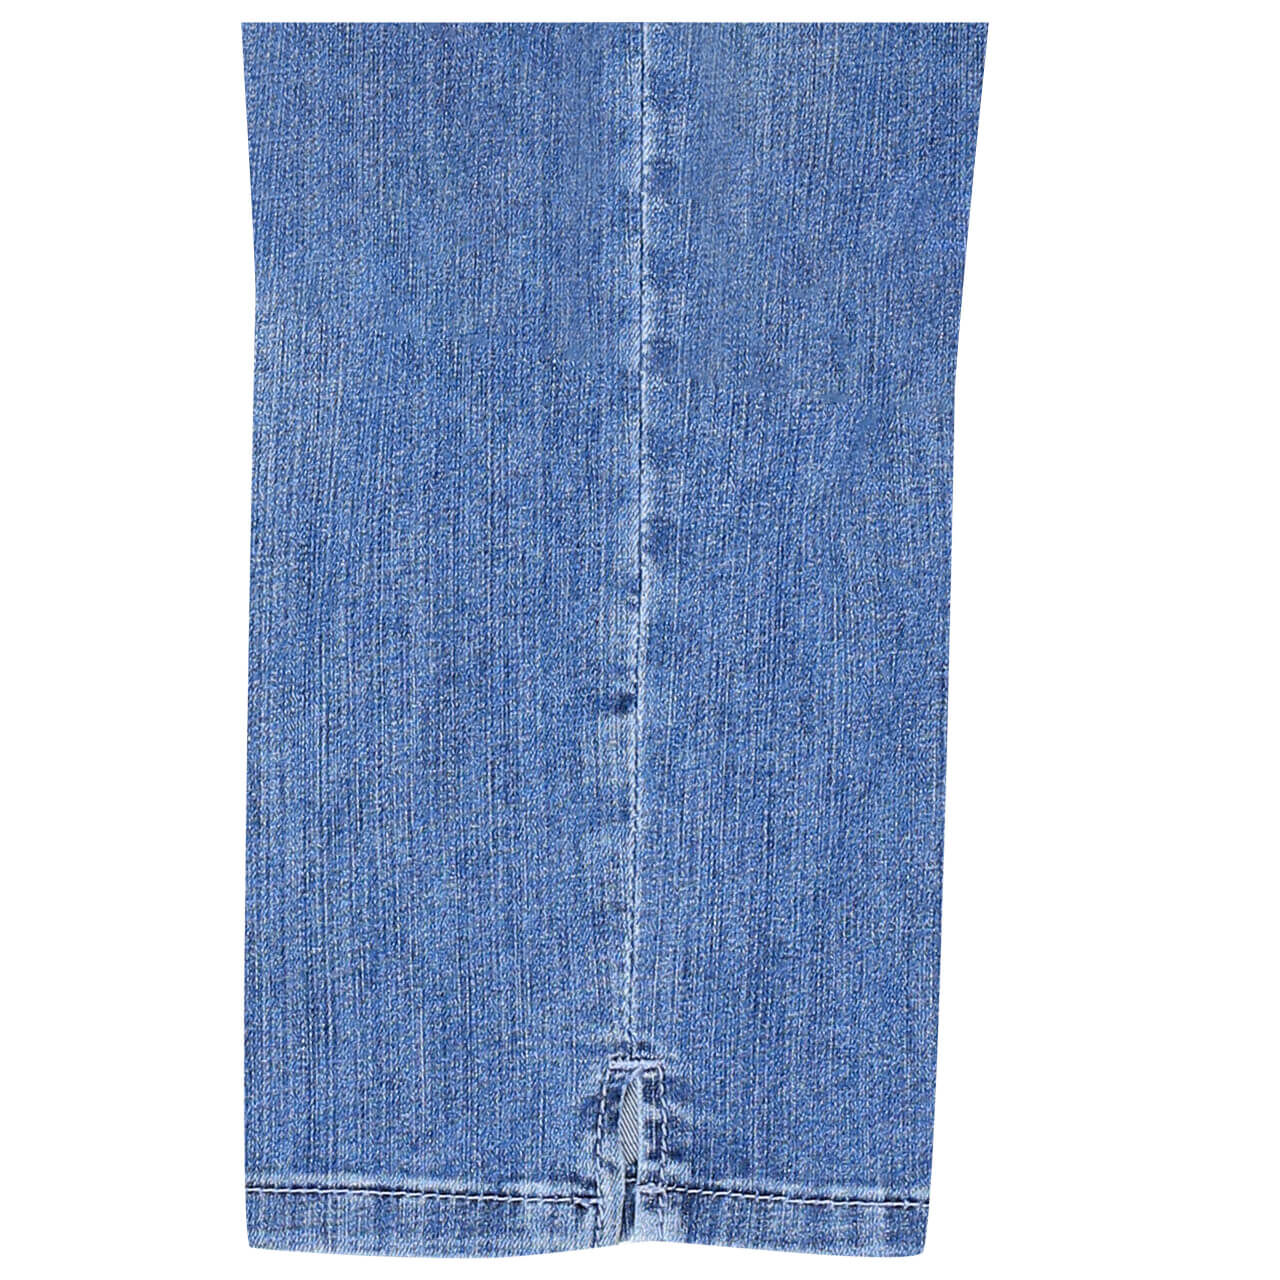 MAC Jeans Angela 7/8 für Damen in Blau angewaschen, FarbNr.: D531